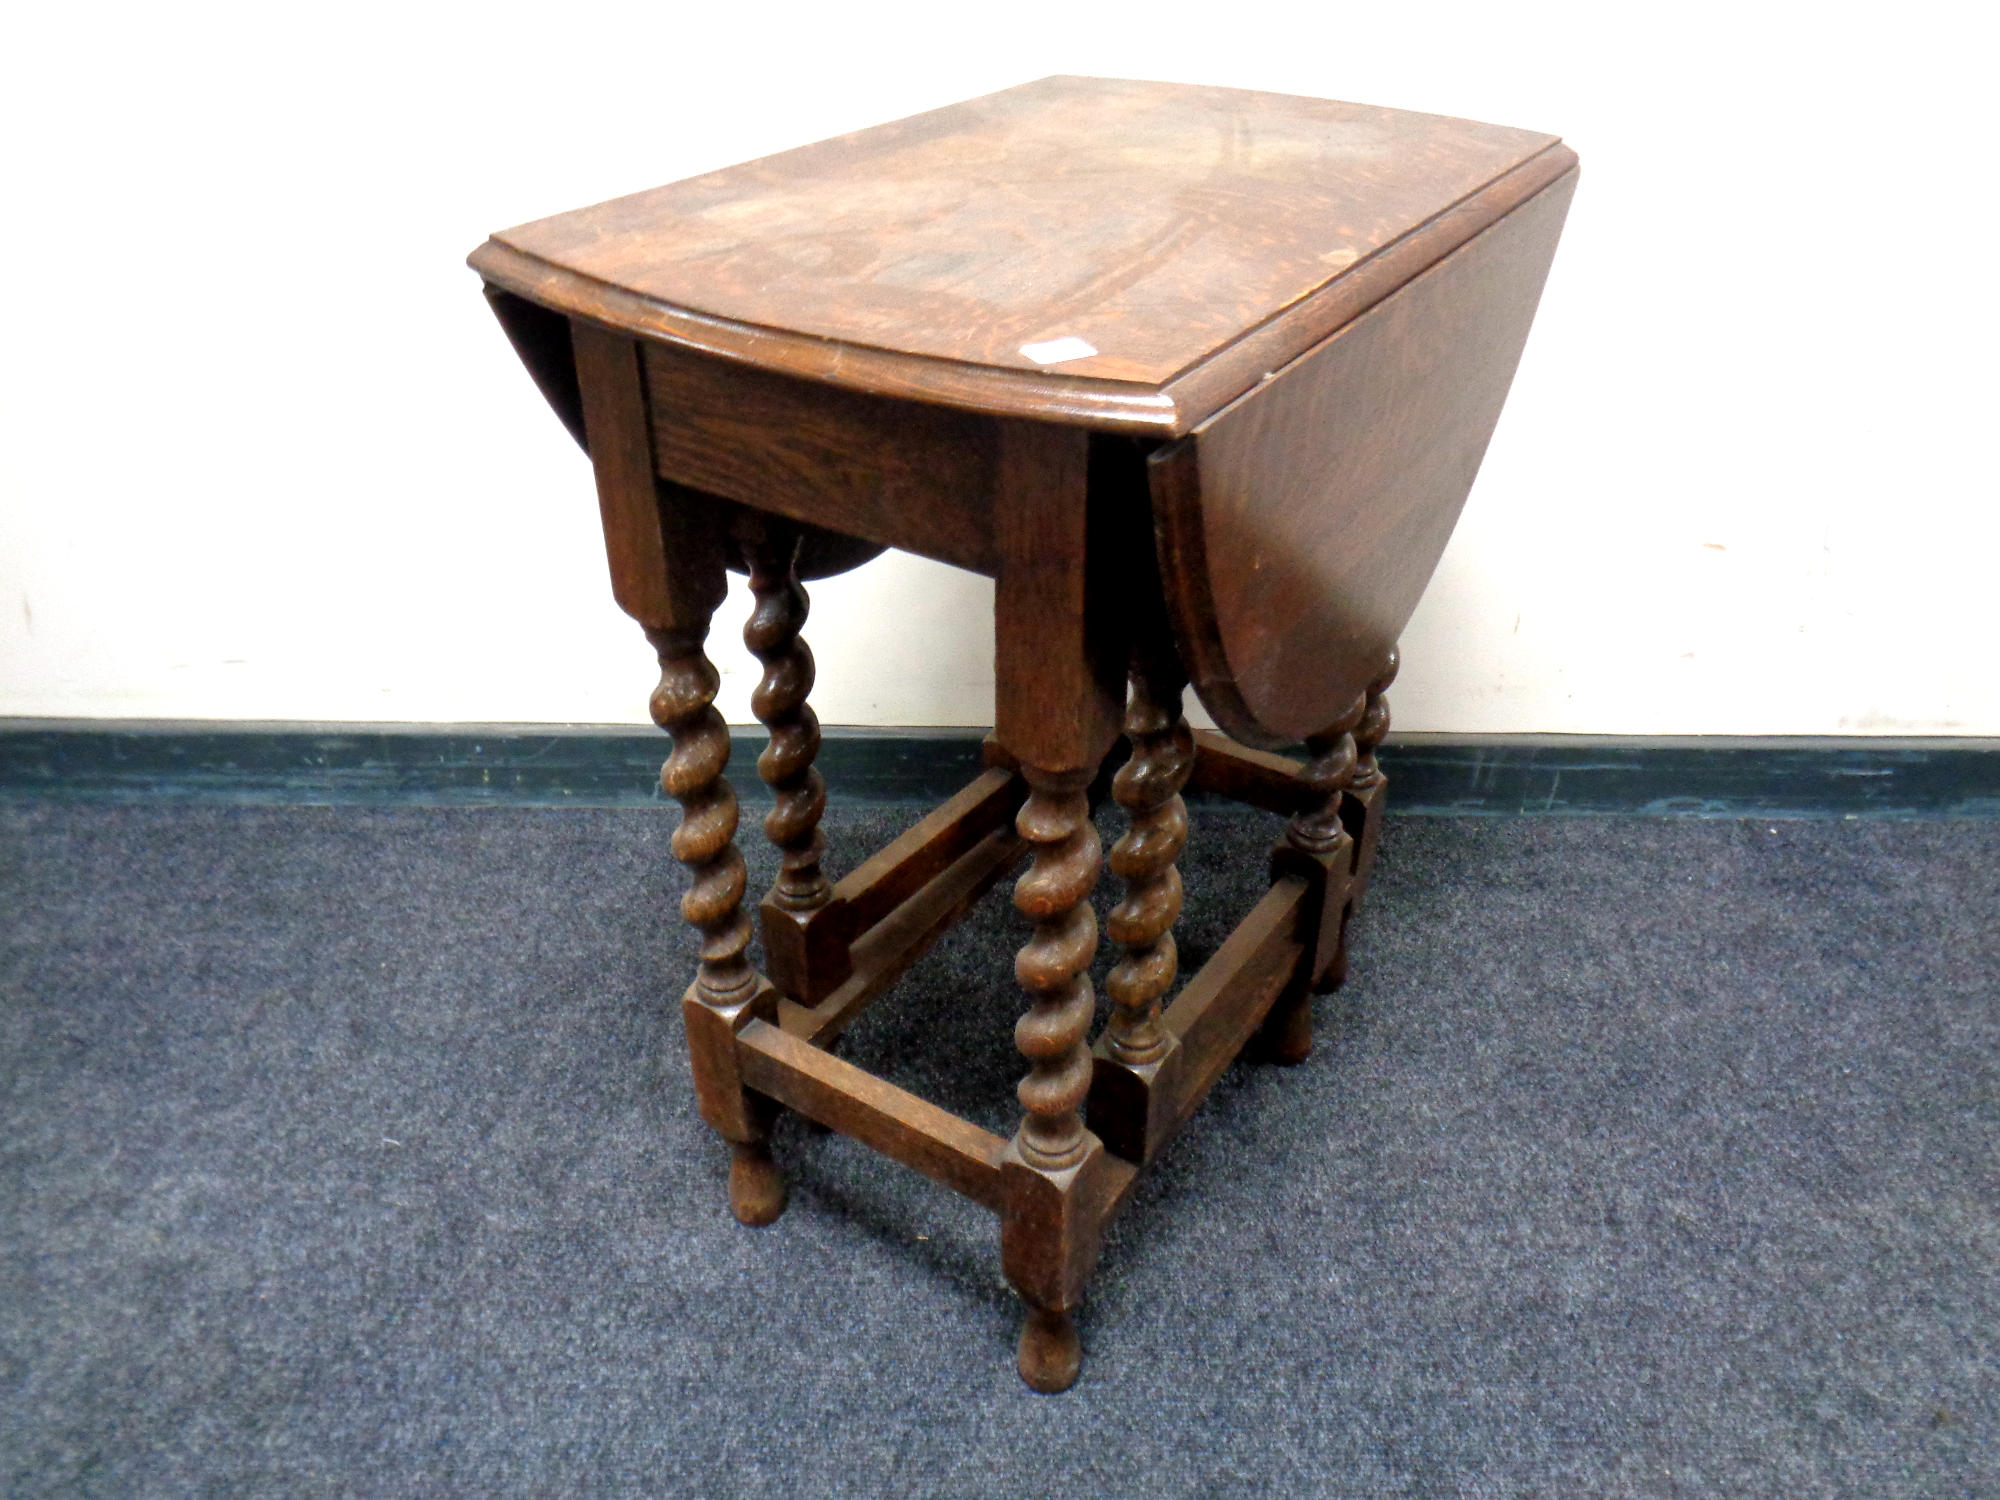 An Edwardian oak gate leg table,